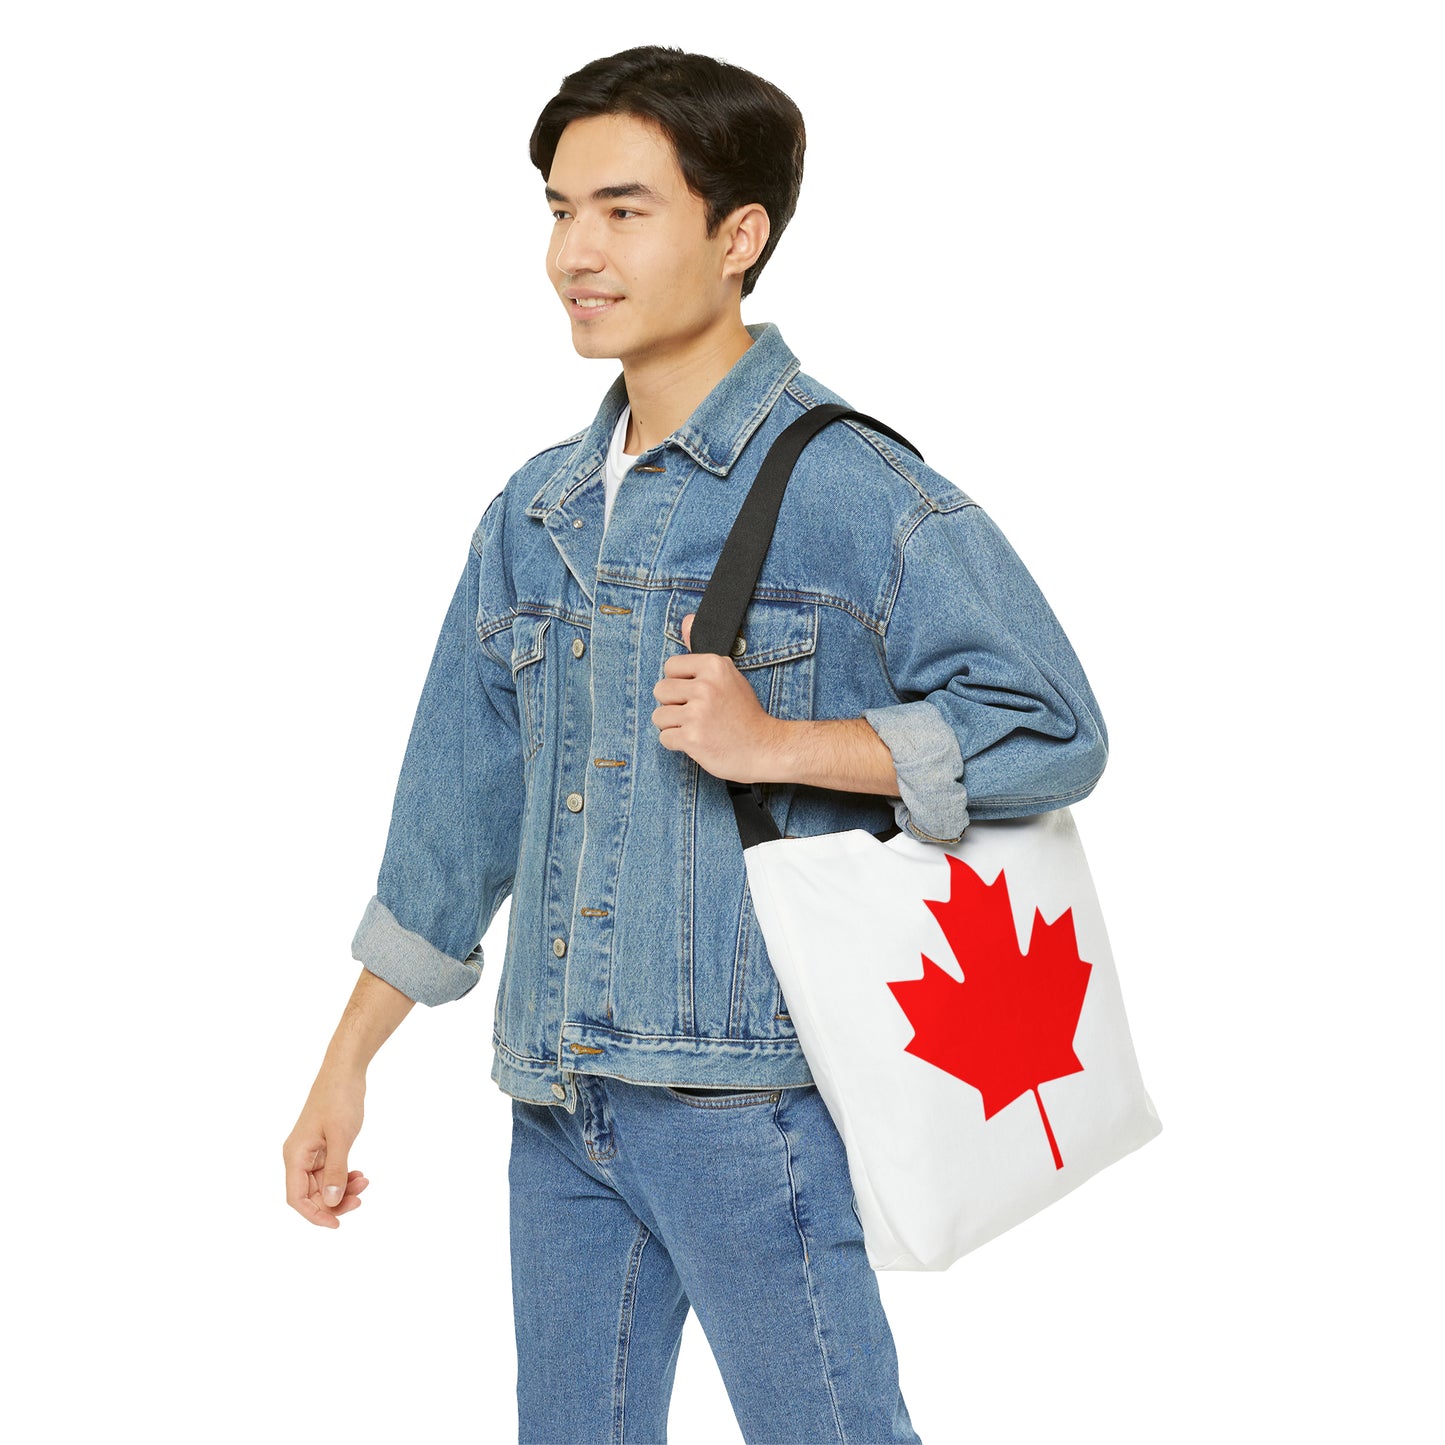 Canadian Maple Leaf, Adjustable Tote Bag